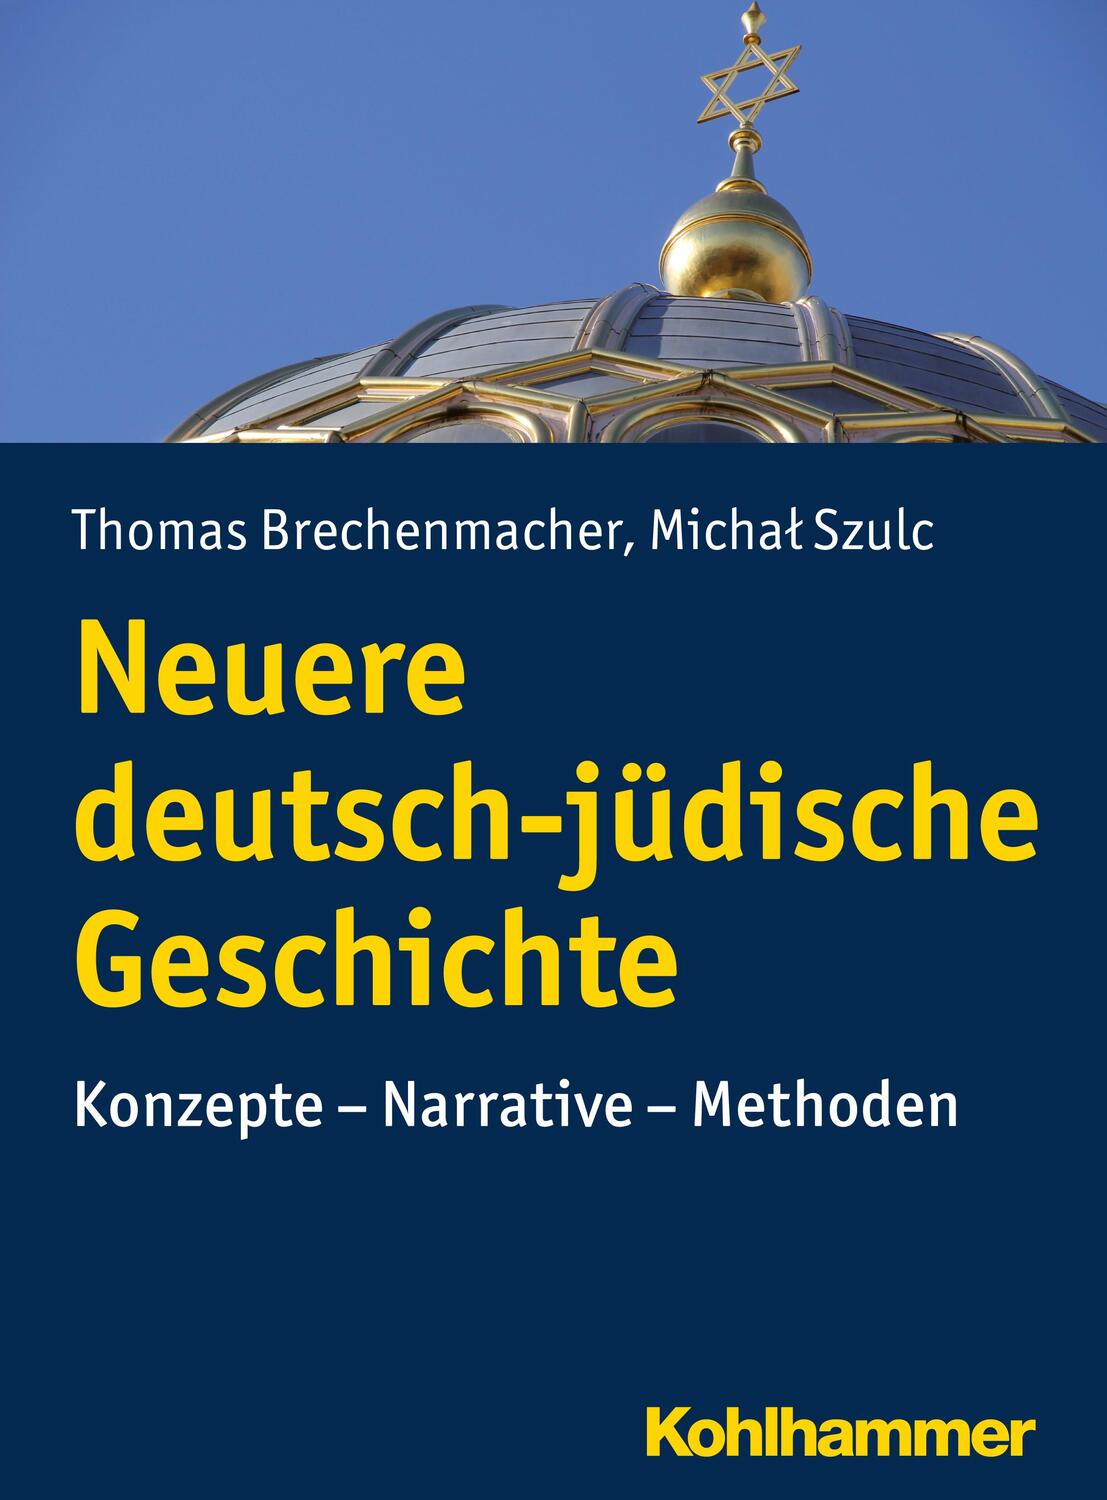 Neuere deutsch-jüdische Geschichte - Brechenmacher, Thomas